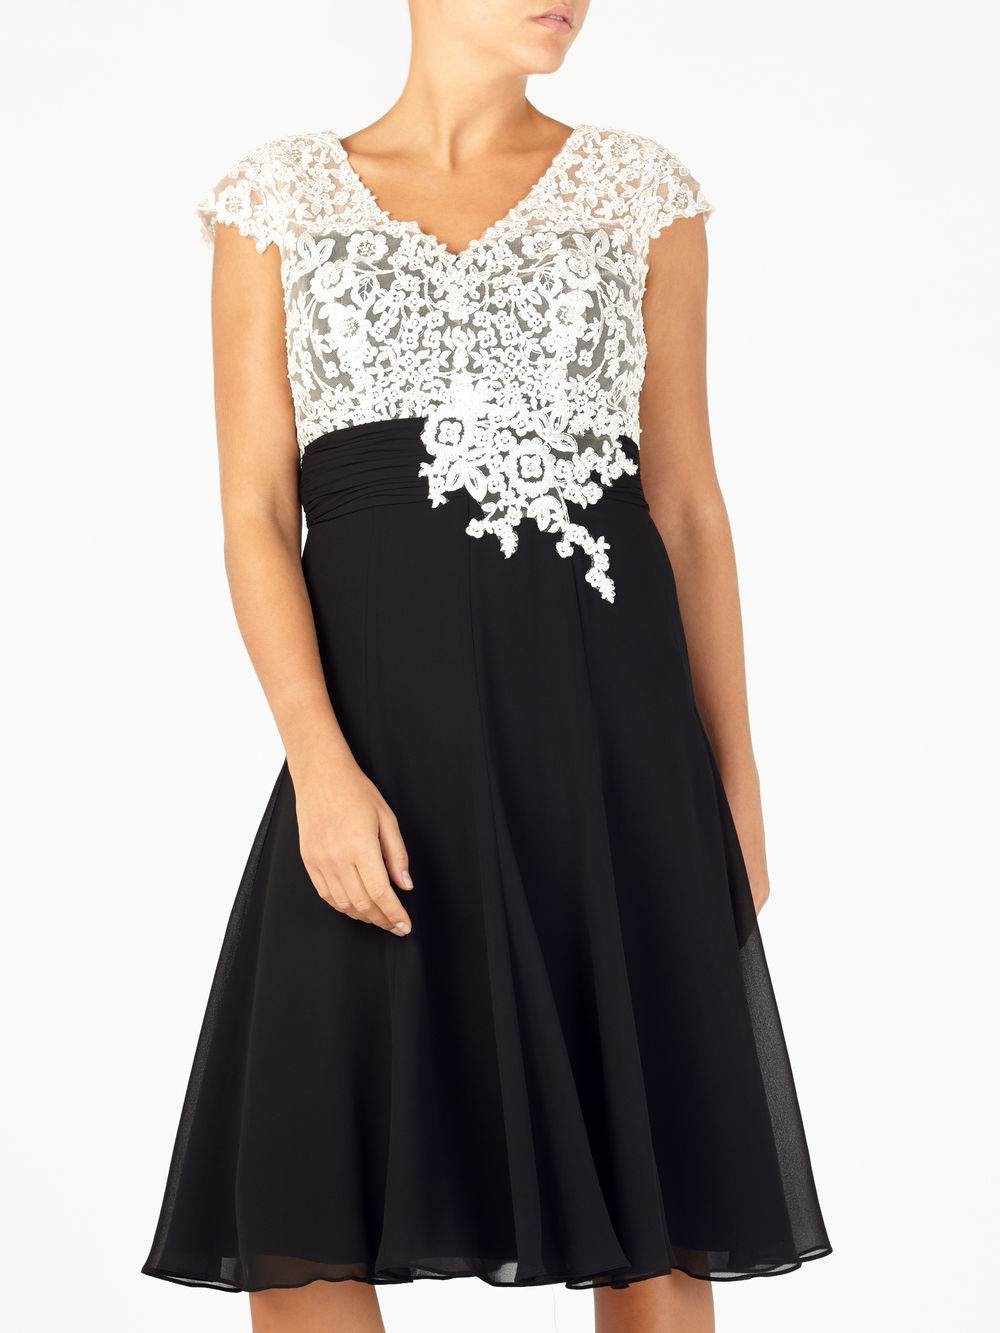 Jacques Vert Lace Bodice Chiffon Dress Multi Black Dresses 10044256